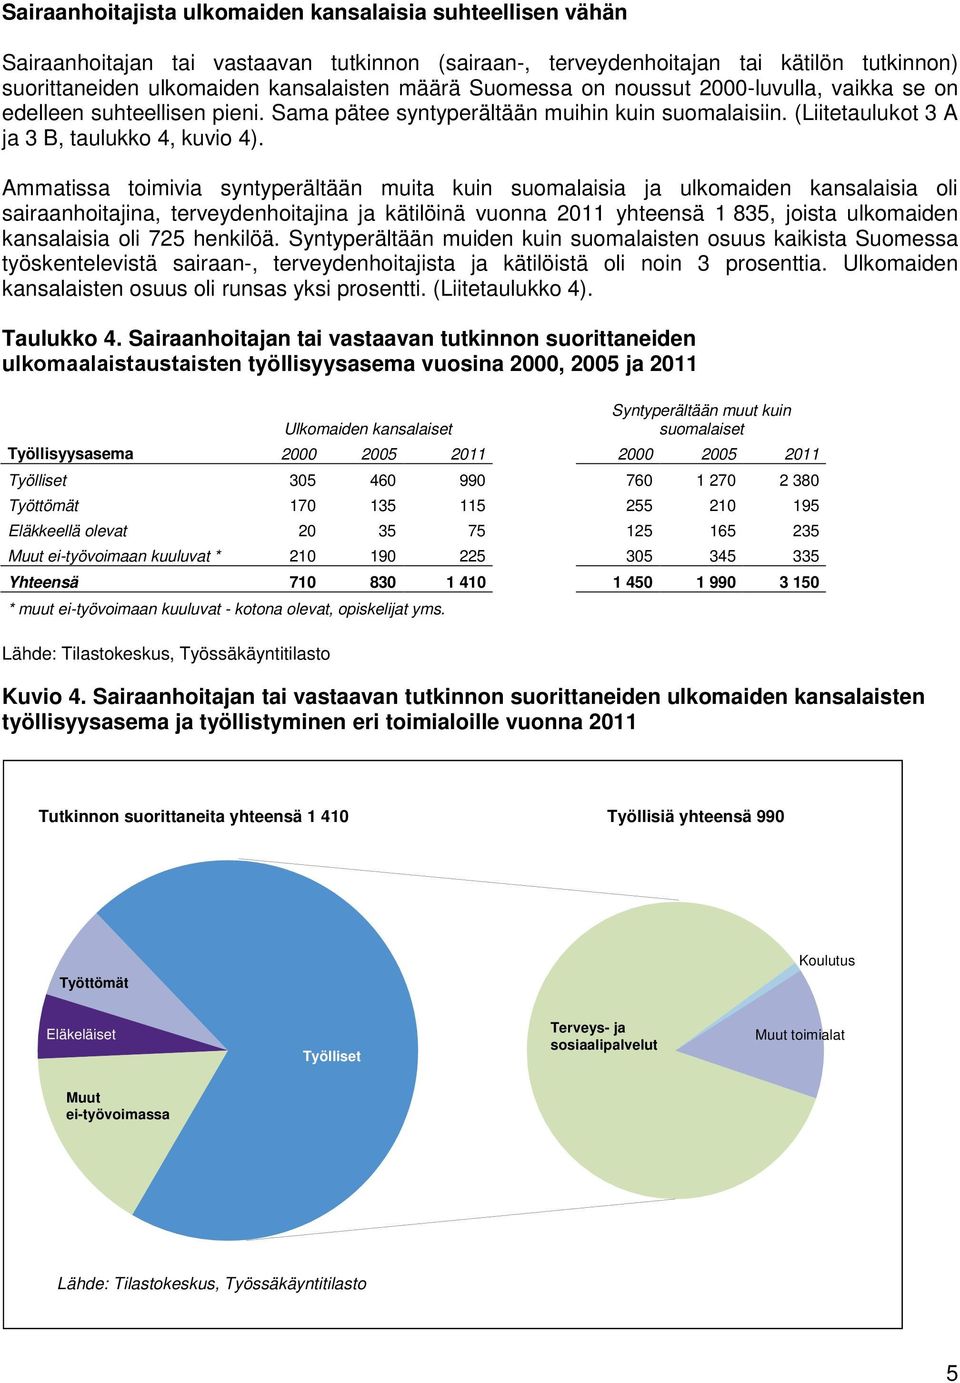 Ammatissa toimivia syntyperältään muita kuin suomalaisia ja ulkomaiden kansalaisia oli sairaanhoitajina, terveydenhoitajina ja kätilöinä vuonna 2011 yhteensä 1 835, joista ulkomaiden kansalaisia oli